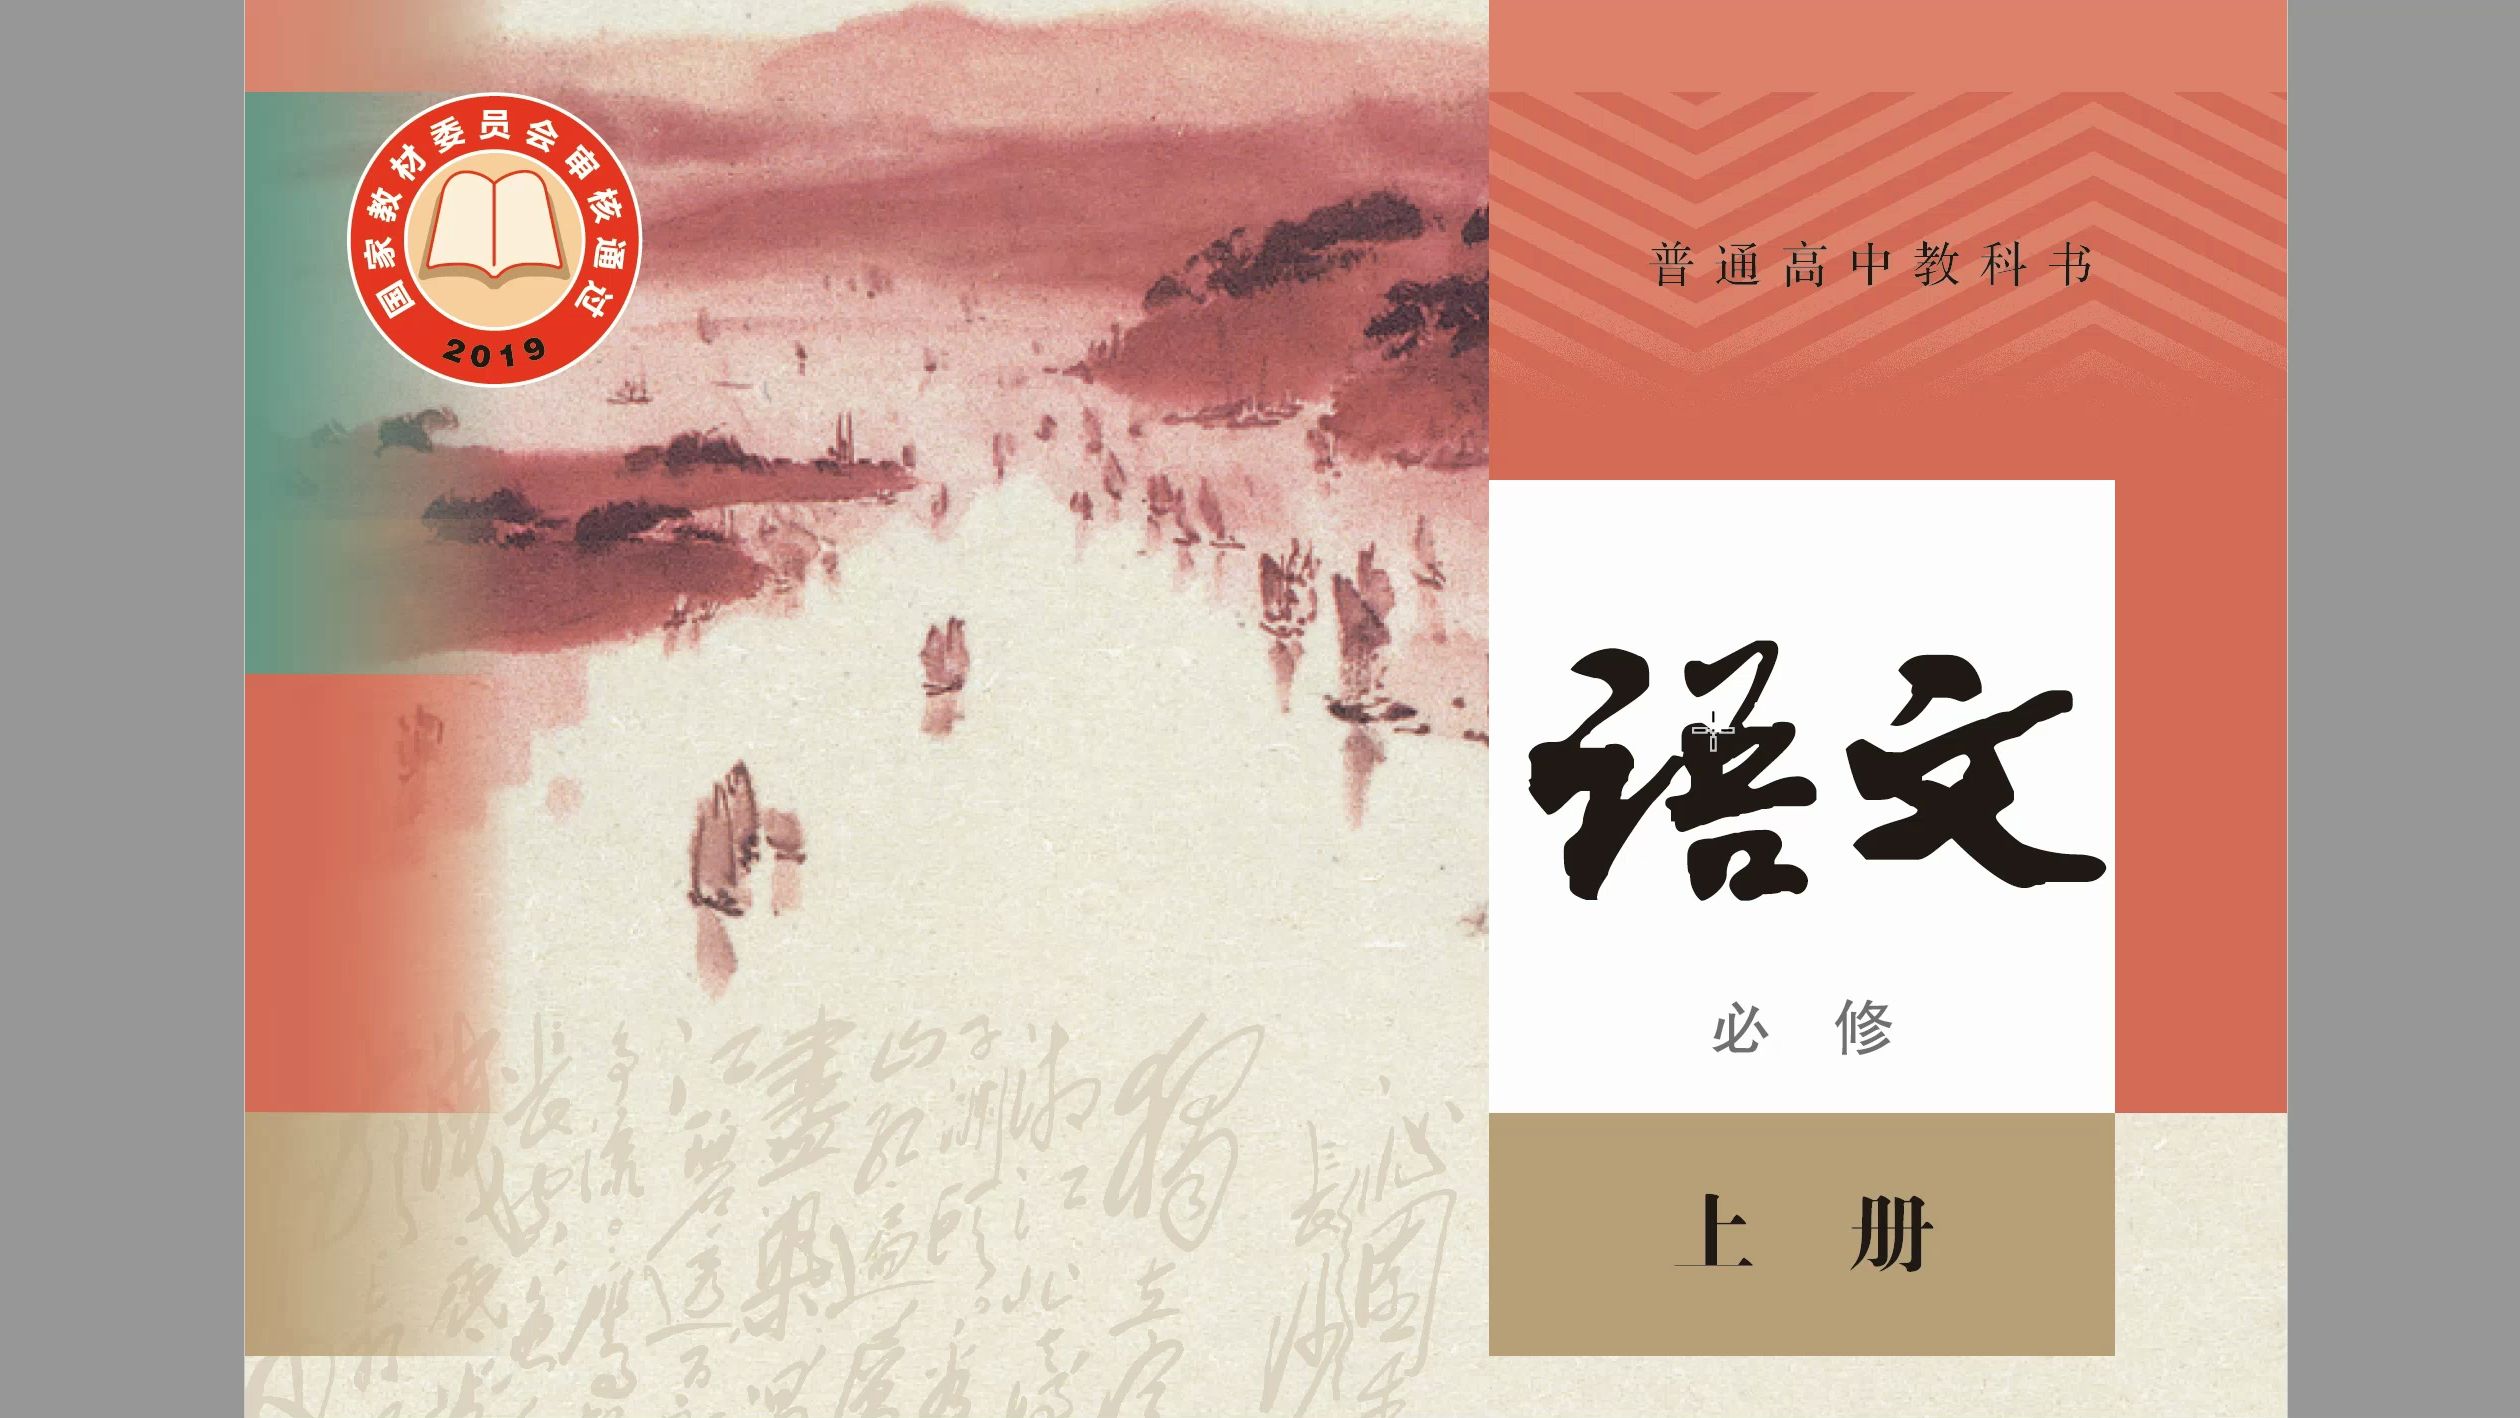 大陆人教版和台湾南一版高中语文课本对白居易琵琶行的描述